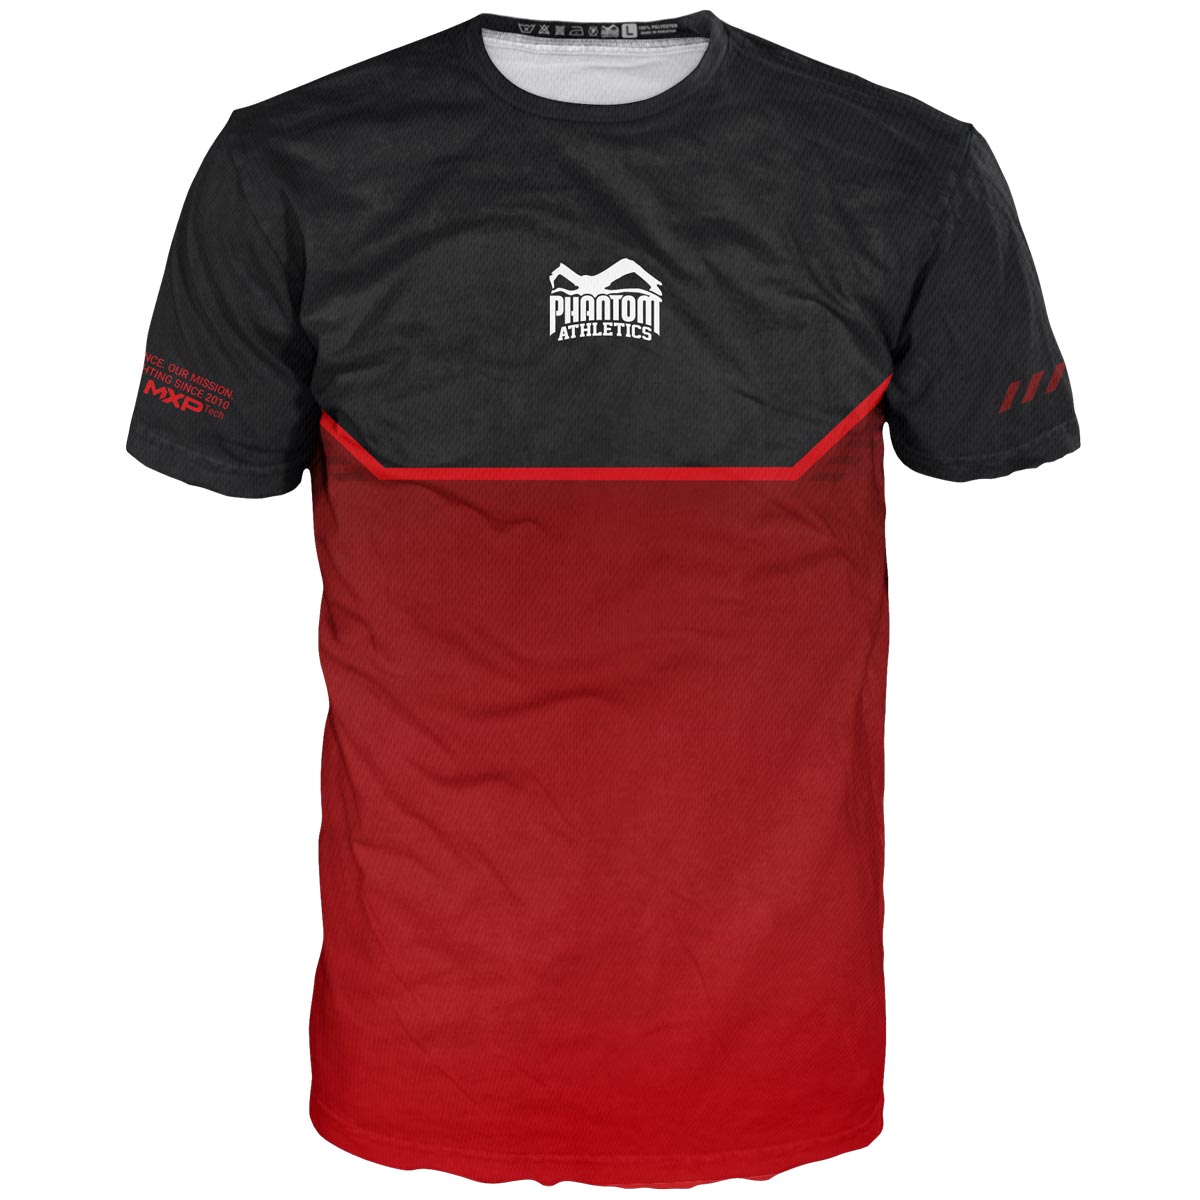 Noua cămașă pentru arte marțiale Phantom EVO pentru antrenamentul tău. Ultra confortabil de purtat și rezistent la transpirație. Acum în ediția limitată RED.